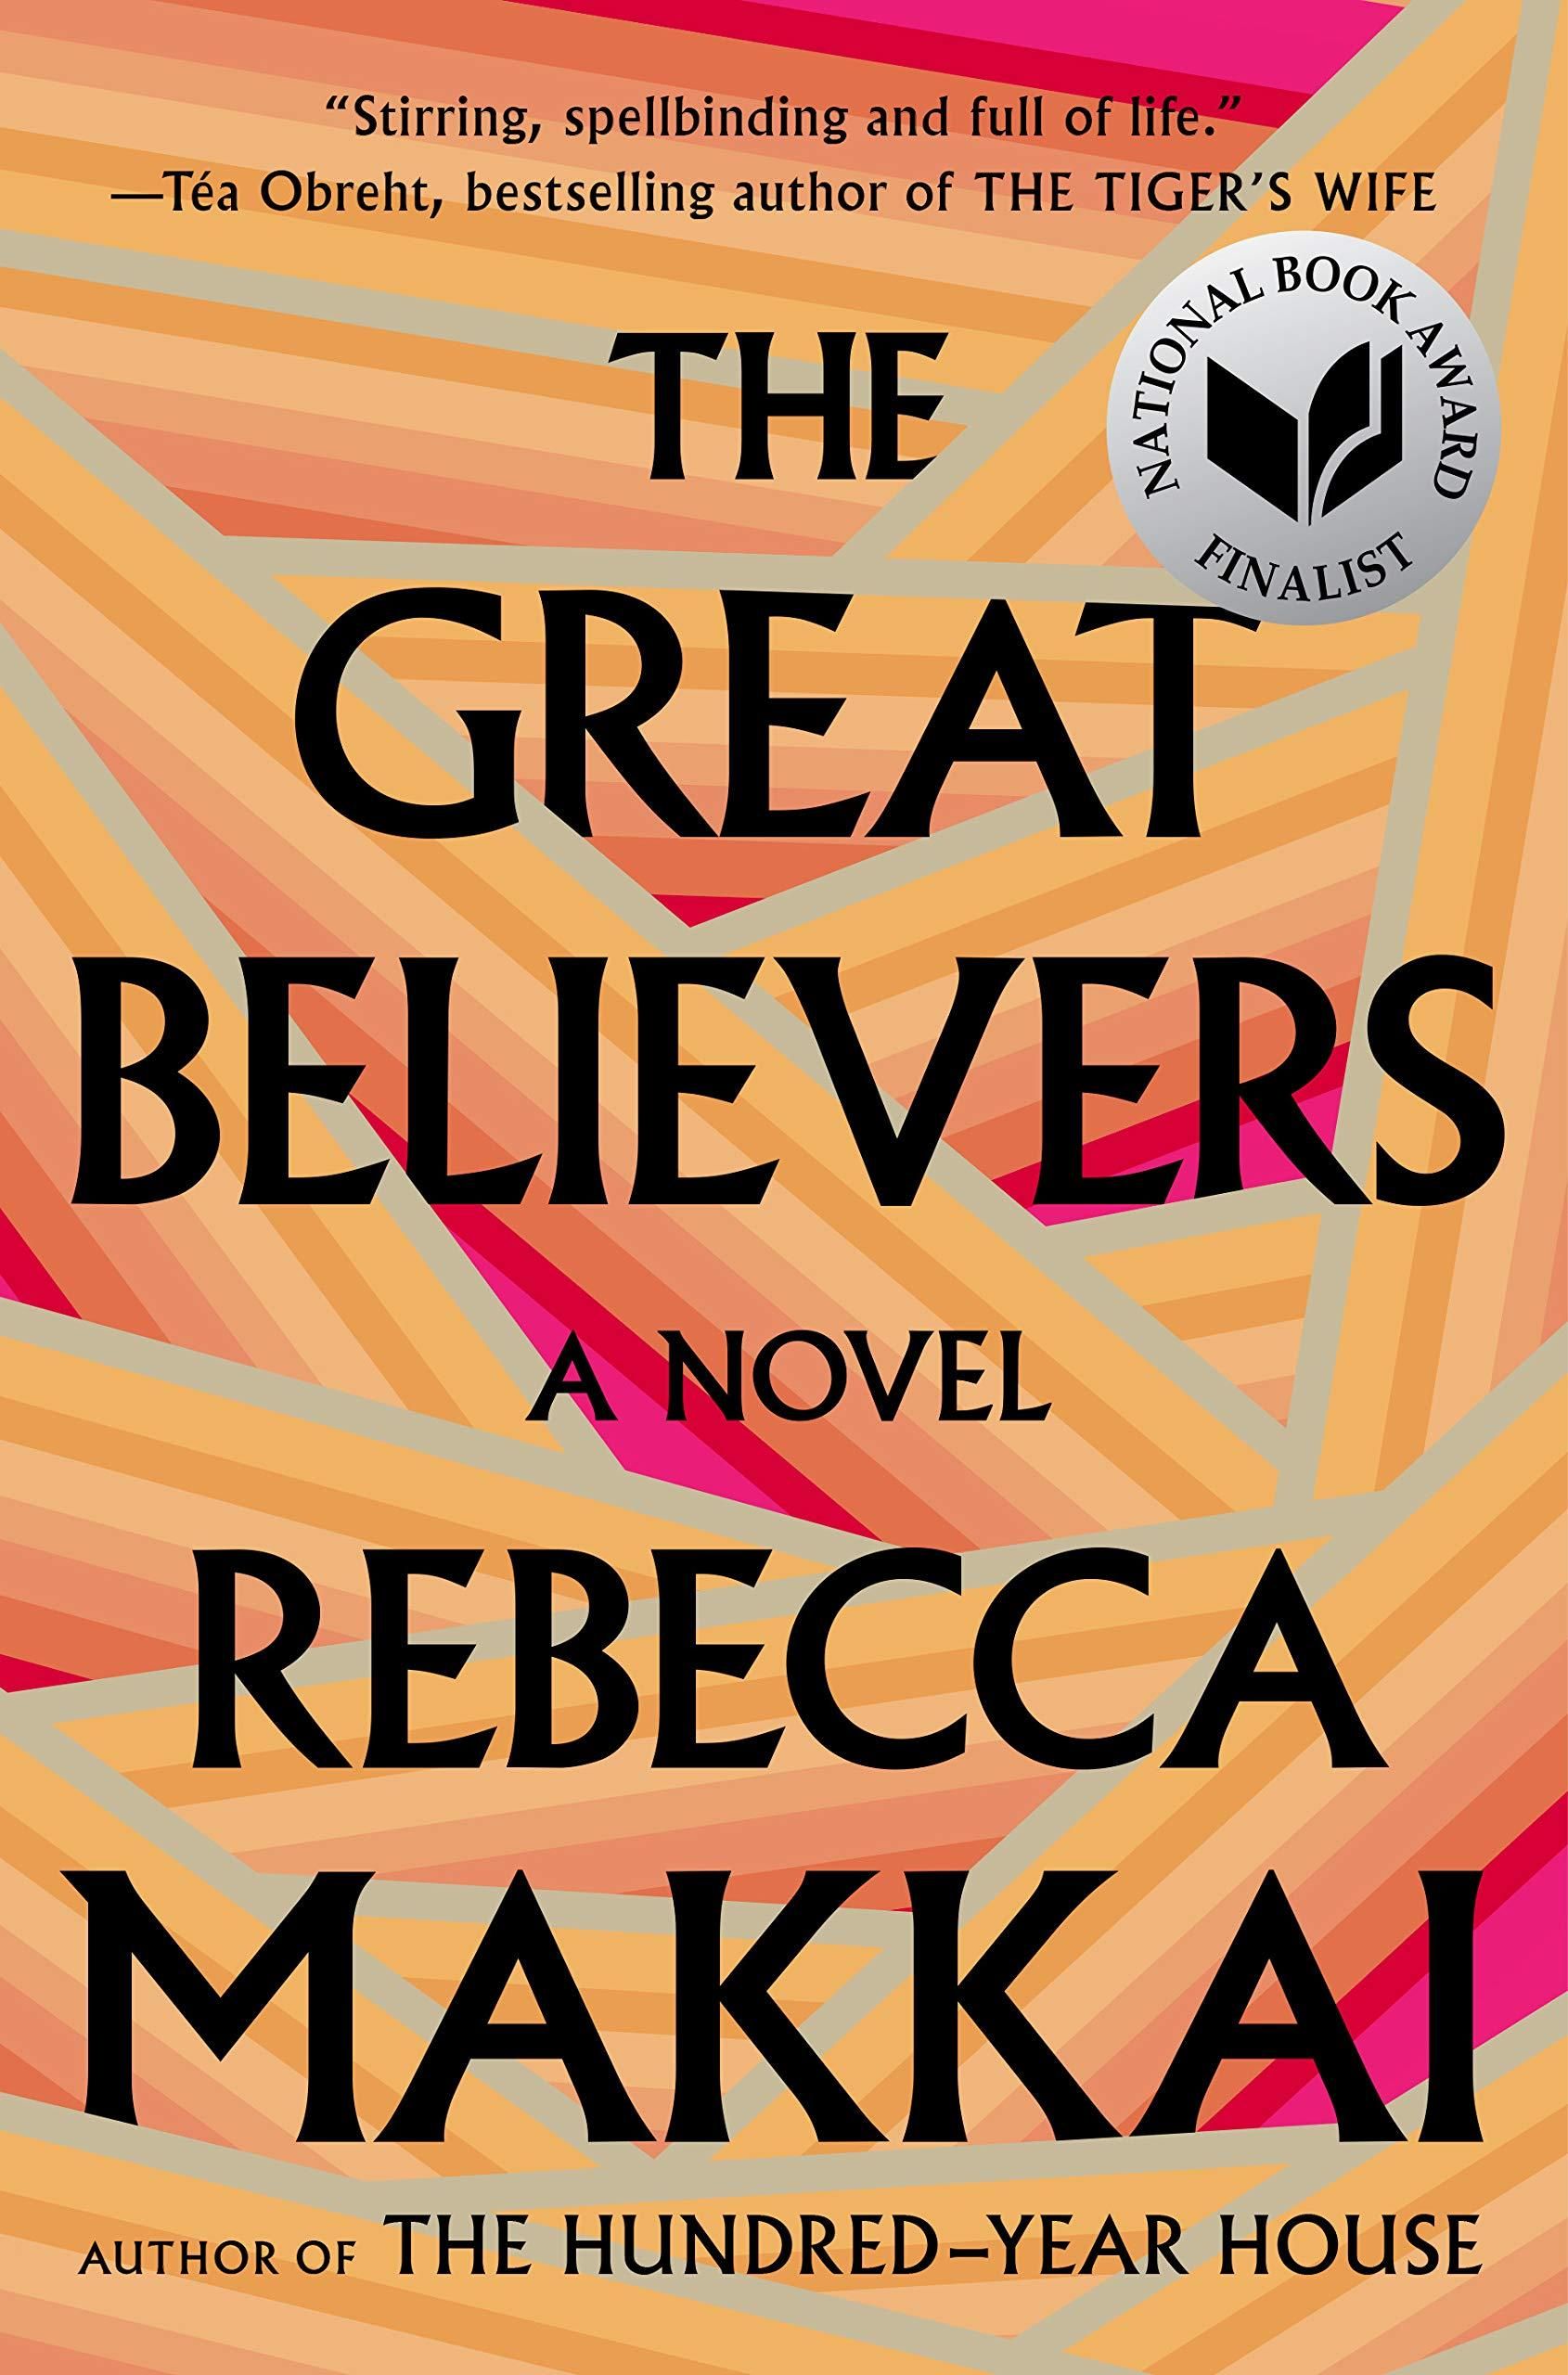 4. The Great Believers by Rebecca Makkai